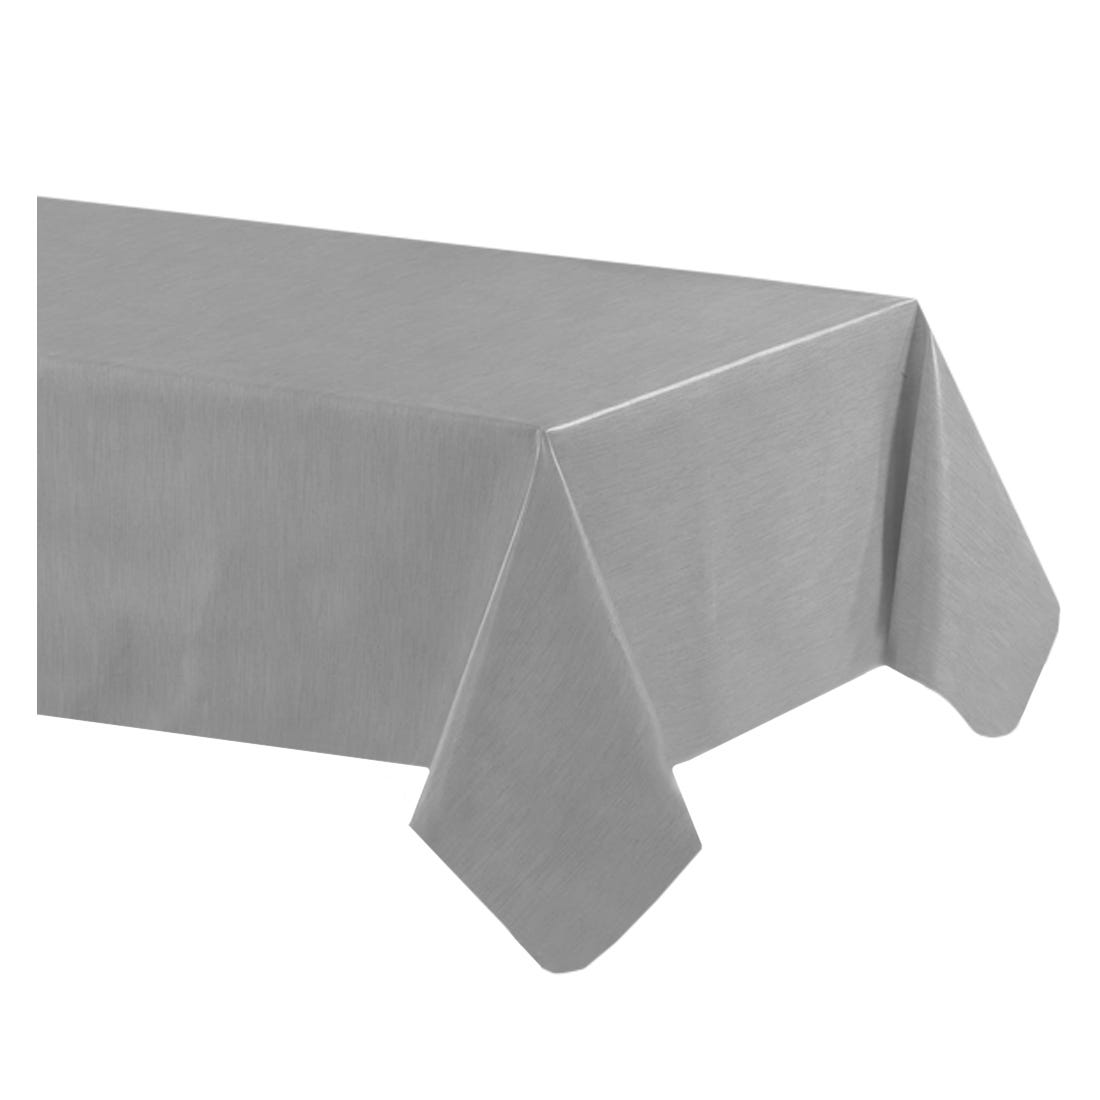 Acomoda Textil – Mantel Antimanchas Rectangular de Hule al Corte. Mantel  Liso Elegante, Impermeable, Resistente y Lavable. (Gris, 140x240 cm)